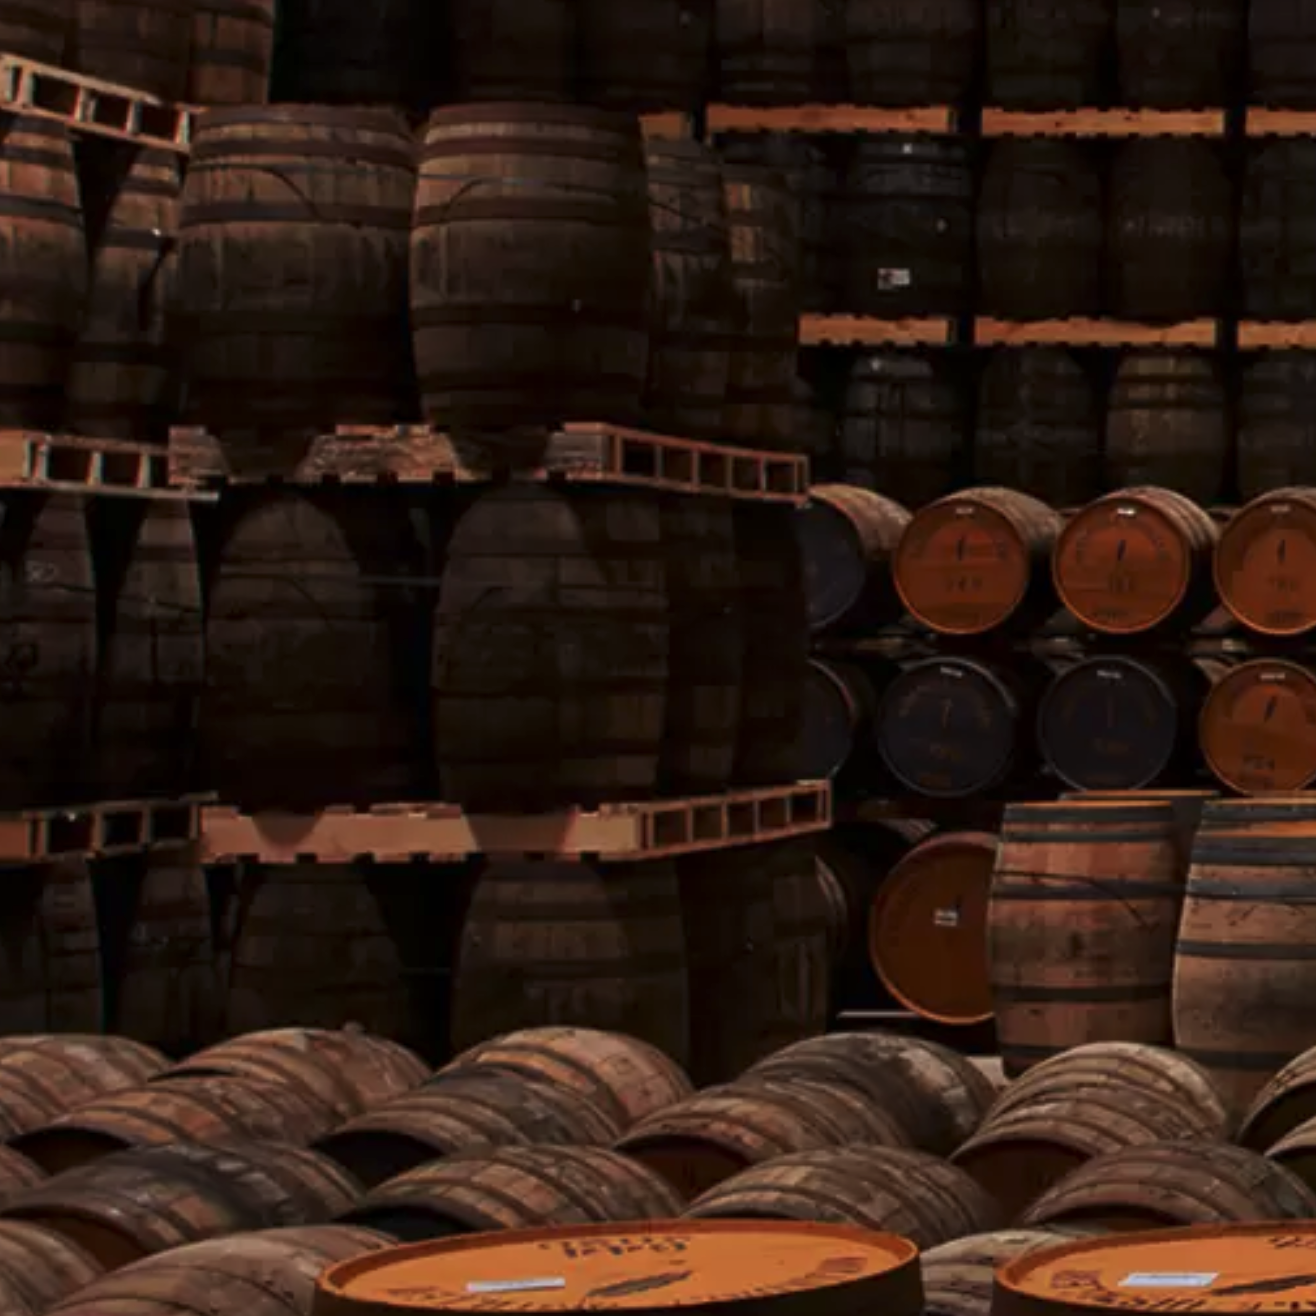 Propiedad de barricas de whisky con la destilería Annandale